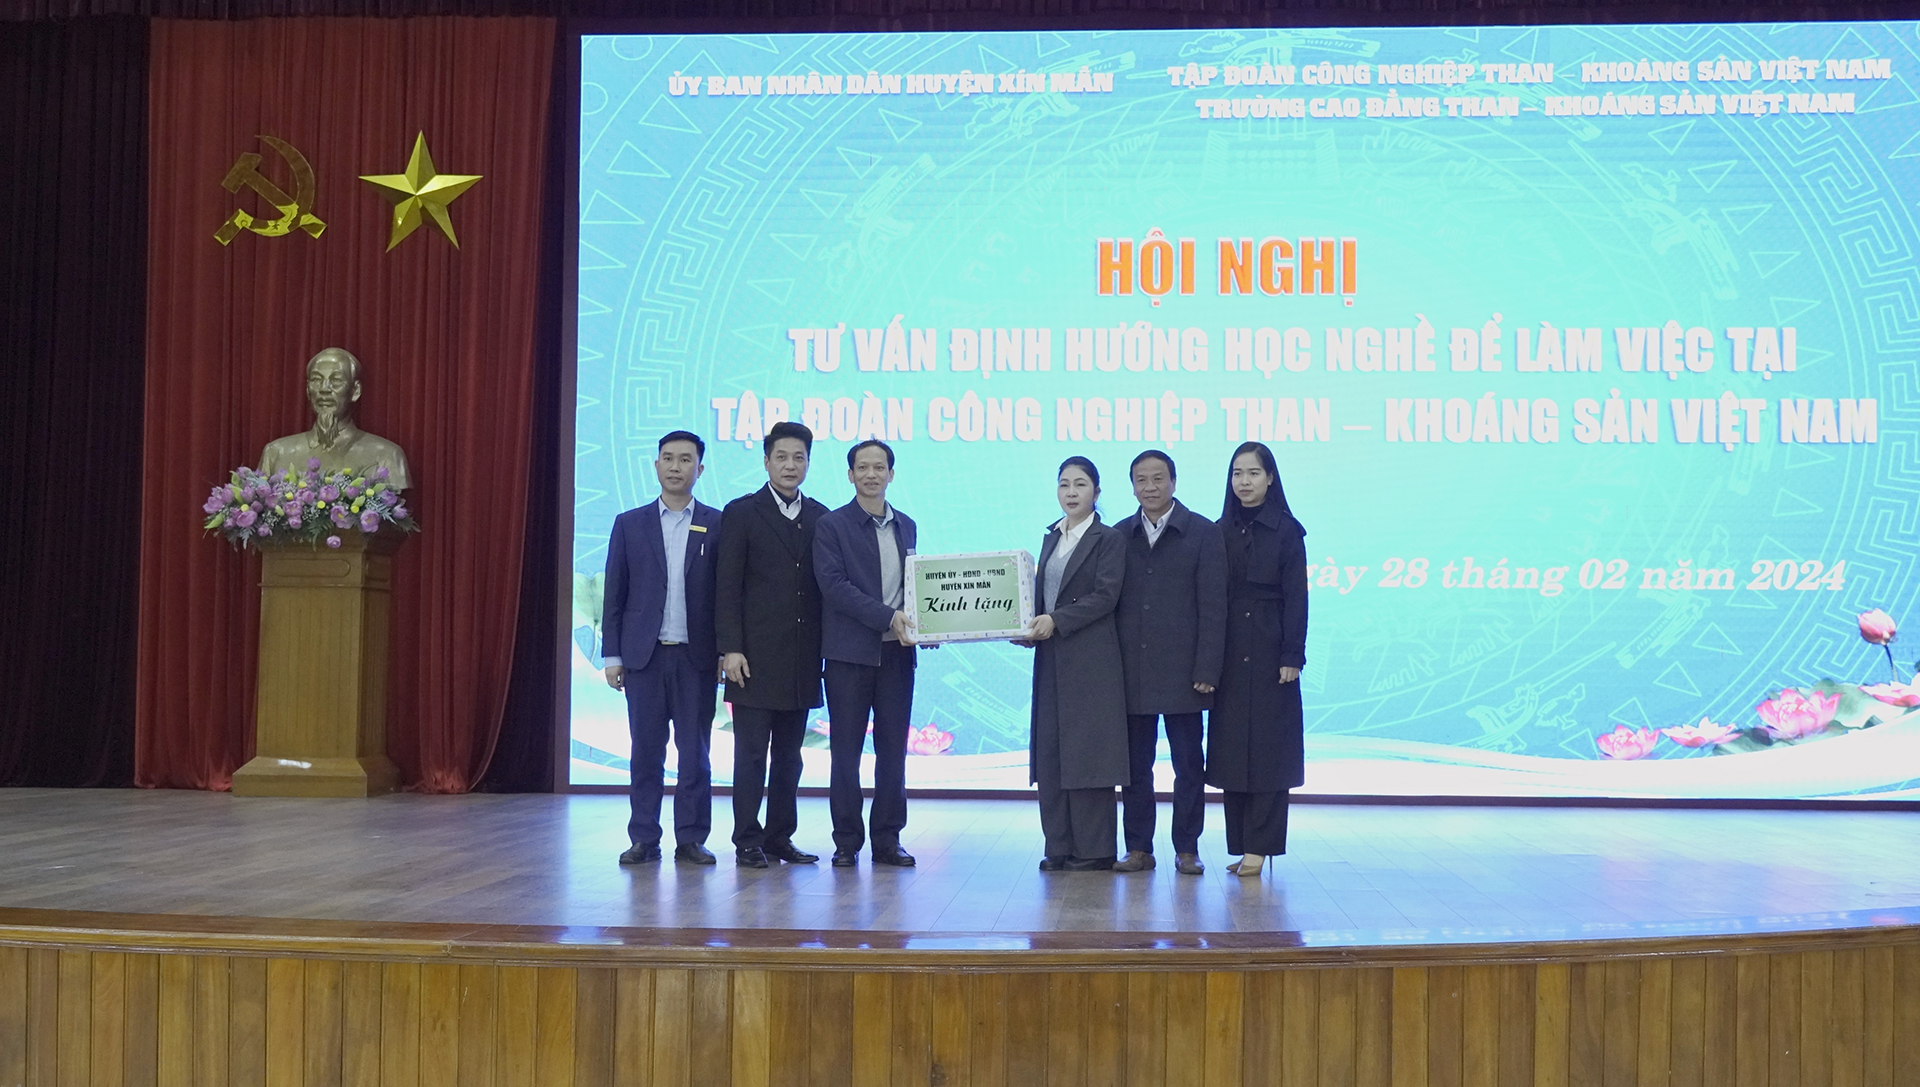 Hội nghị tư vấn định hướng học nghề để làm việc tại Tập đoàn Công nghiệp Than – Khoáng sản Việt Nam tại tỉnh Quảng Ninh